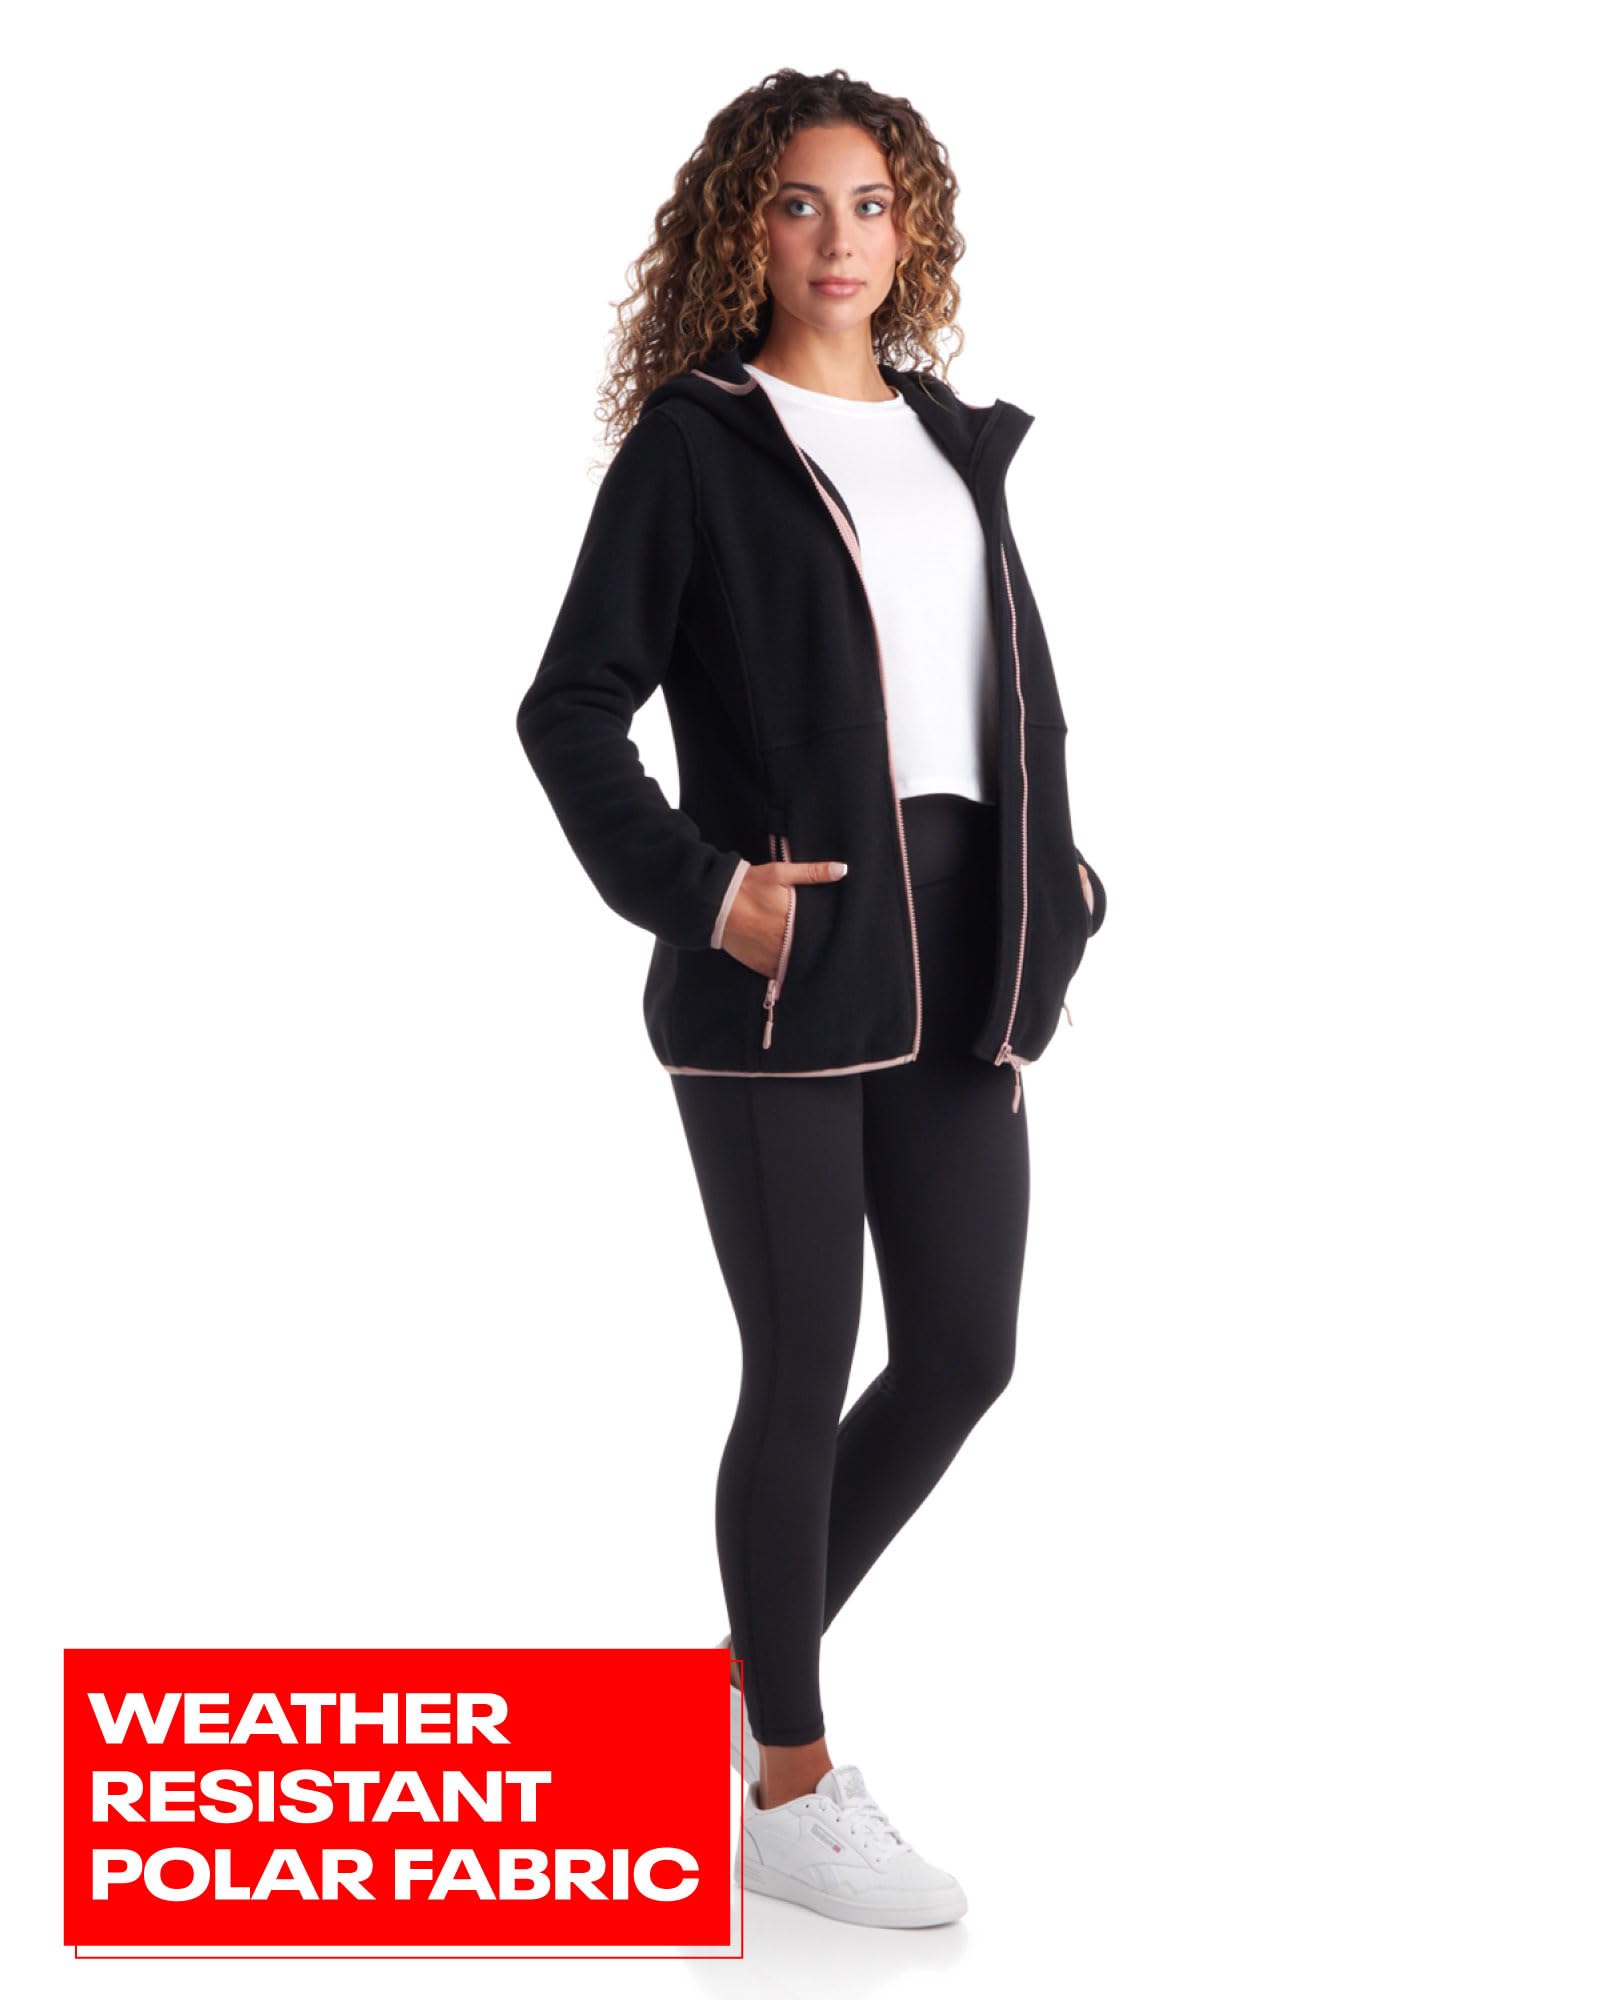 Reebok Women's Jacket - Polar Fleece Sweatshirt Jacket - Lightweight Coat for Women (S-XL), Size Small, Black